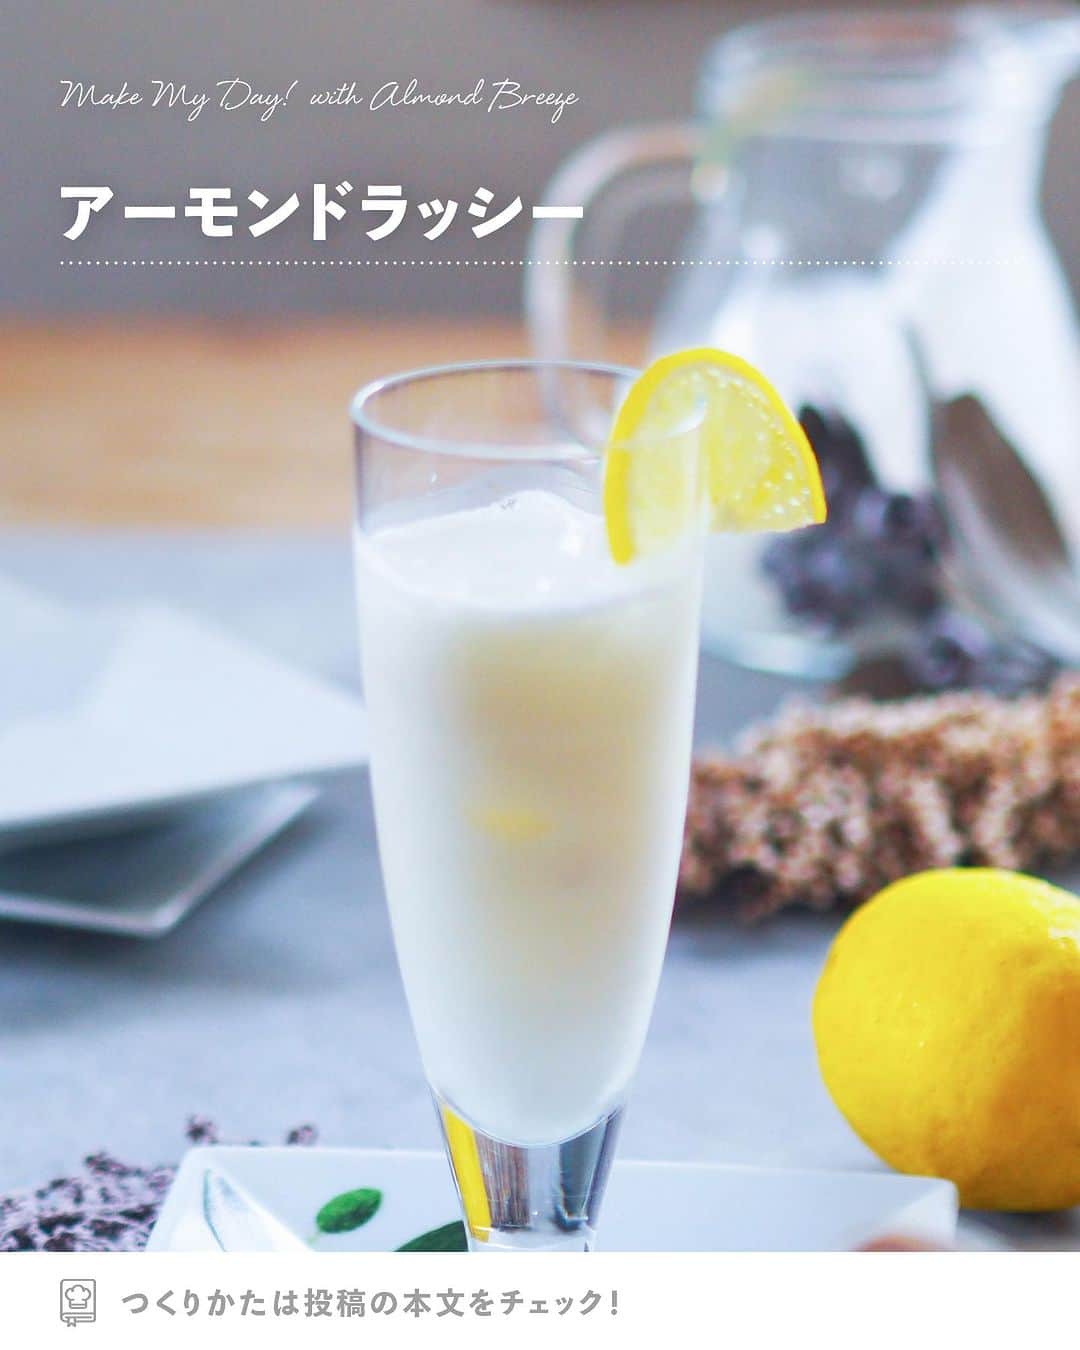 アーモンド・ブリーズのインスタグラム：「. 𝗧𝗢𝗗𝗔𝗬'𝗦 𝗥𝗘𝗖𝗜𝗣𝗘『レモン風味のアーモンドミルクラッシー』 ________________________________________  暑い日でもすっきり飲める レモン風味のお手軽ラッシー🍹✨  牛乳をアーモンドミルクにすることで、 カロリー控めになります。  酸味が足りない場合は レモンを増やしてご調整ください🍋🌿  ________________________________________  作者｜Kaoriさん（ @puchan_cafe ）  〈 𝗥𝗘𝗖𝗜𝗣𝗘 〉  ■分量／時間 　👤：2人分 　⏰：10分（冷ます時間除く）  ■材料 ・Almond Breeze（オリジナル）：200ｍＬ ・無糖ヨーグルト：200mL ・レモン汁：小さじ２ ・飾り用のレモン：お好みで  ※アレルギー等をお持ちの方は必ず原材料を 　事前によくご確認ください。  ■作り方 ①：ボールにAlmond Breeze、無糖ヨーグルト、 　　レモン汁を順に入れて混ぜる。  ②：グラスにレモンスライスを飾り氷を入れ、 　　①を注げばできあがりです。  ________________________________________  💎プロフィールのURLから”𝗣𝗿𝗼𝗱𝘂𝗰𝘁“をチェック！ 　@bluediamondalmondsjp  🛒 Amazonでもご購入可能です。  　※公式サイトからも 　　Amazonページへ行くことができます。 ________________________________________  #productofcalifornia #ブルーダイヤモンドアーモンド #アーモンドブリーズ #アーモンドミルク #アーモンド #植物性ミルク #プラントベース #プラントベースフード #ブルーダイヤモンドレシピ #アーモンドミルクレシピ #ヘルシーレシピ #旬の食材レシピ #旬のレシピ #旬の食材 #簡単レシピ #レシピ募集中  #夏レシピ  #夏バテレシピ #夏バテメニュー #夏バテ防止メニュー #ラッシーレシピ」